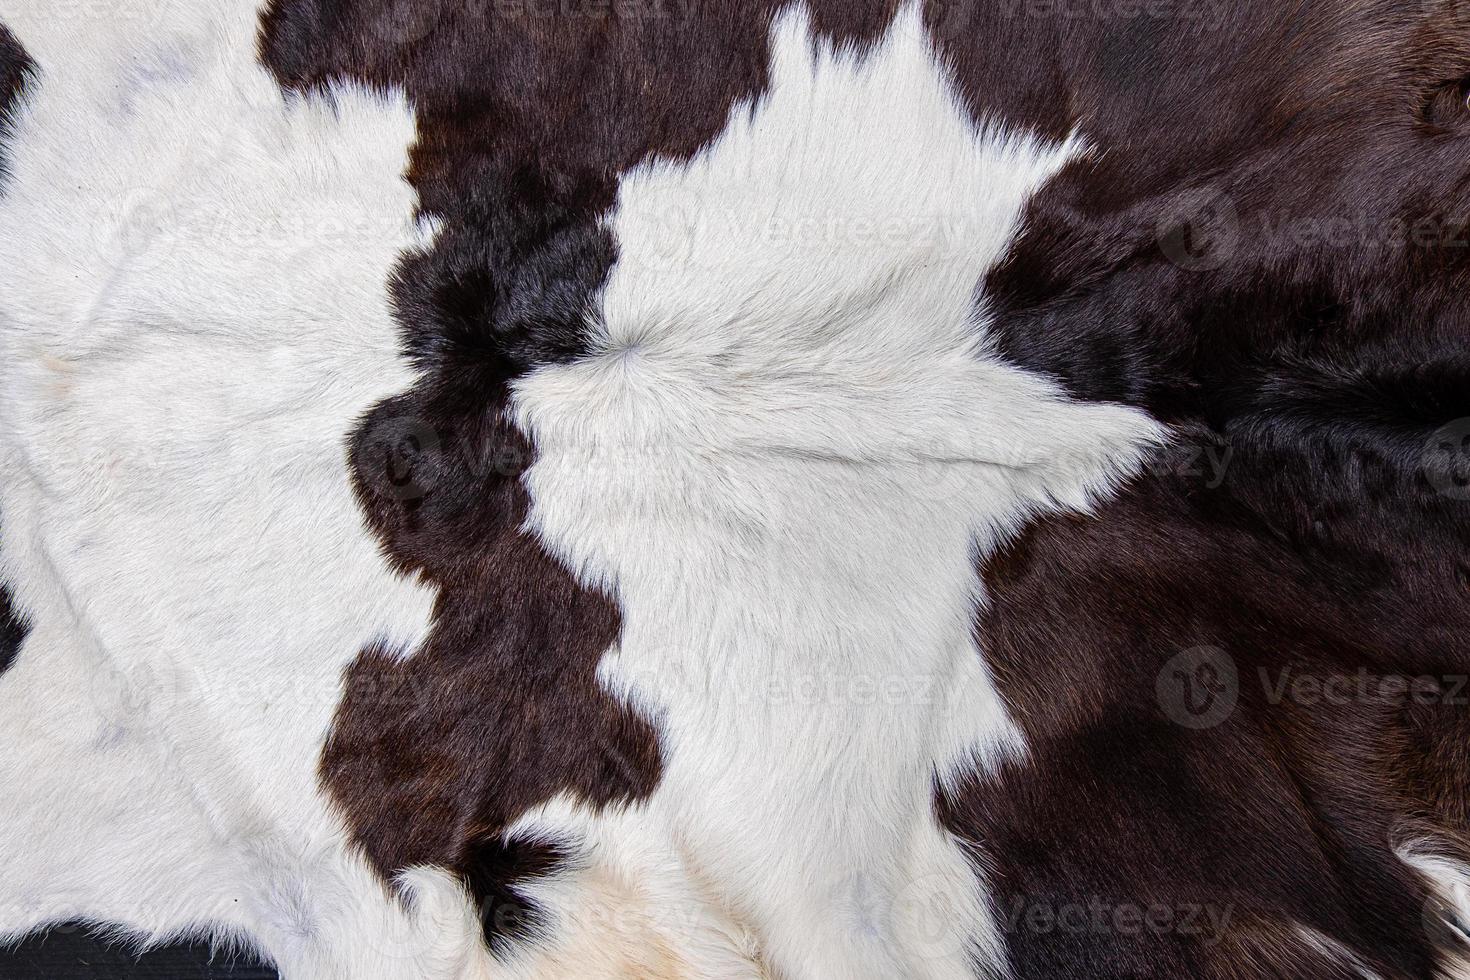 bruine koeienhuid vacht met bont zwart wit en bruine vlekken foto